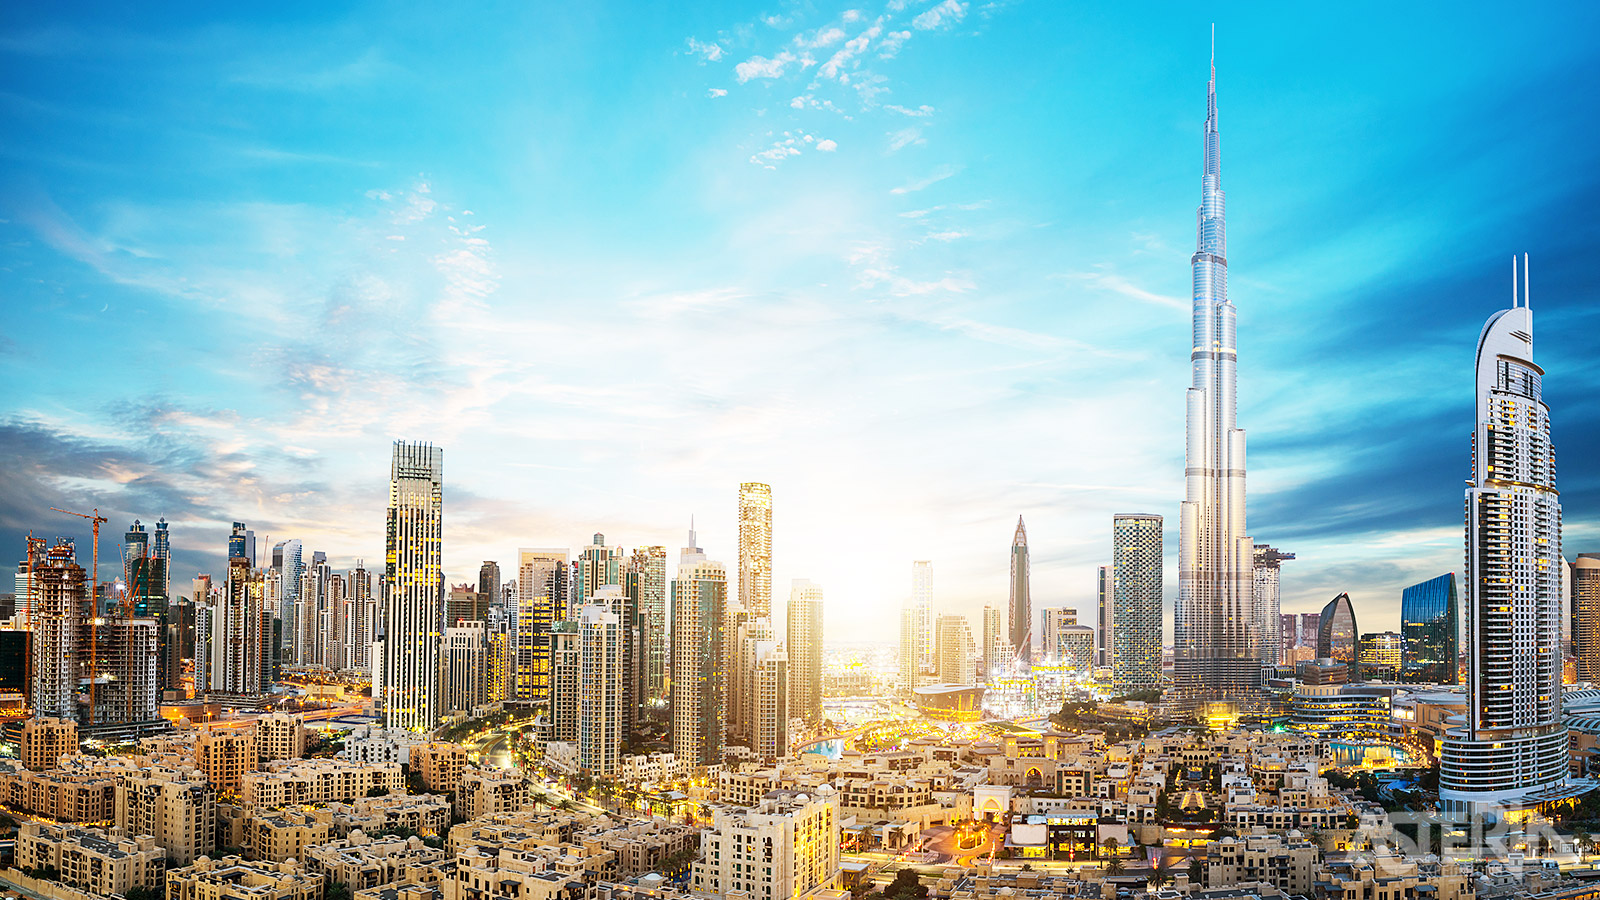 Welkom in Dubai, met de iconische 828m hoge Burj Khalifa